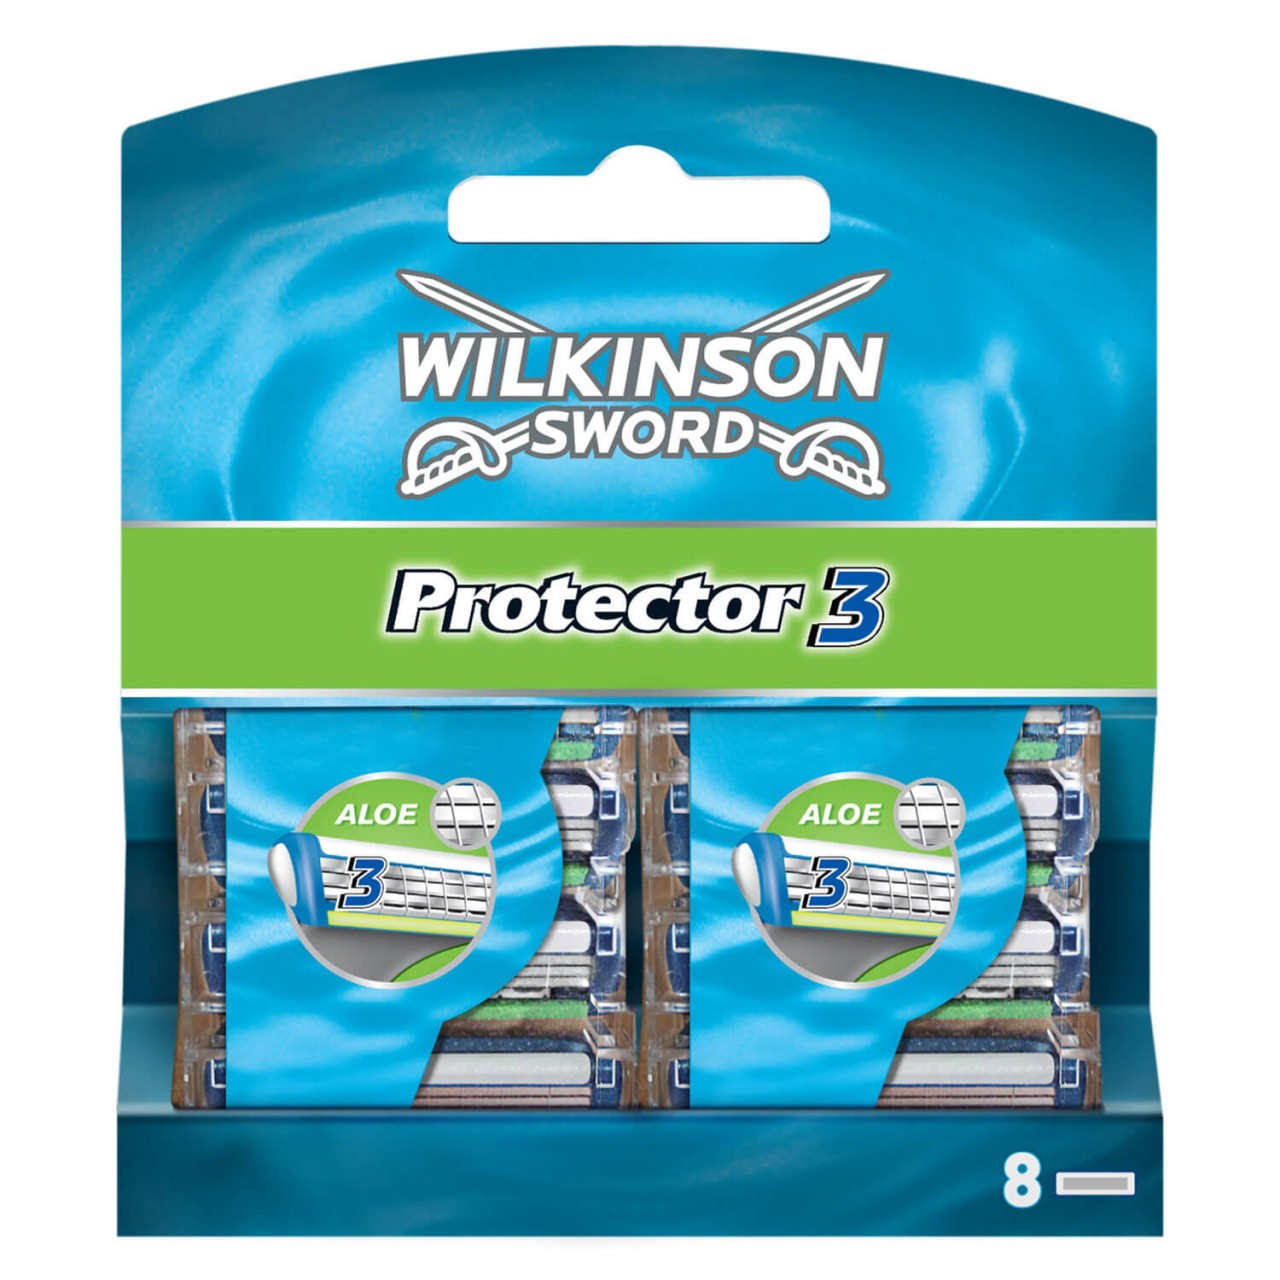 Protect - Klingen Protector 3 von Wilkinson